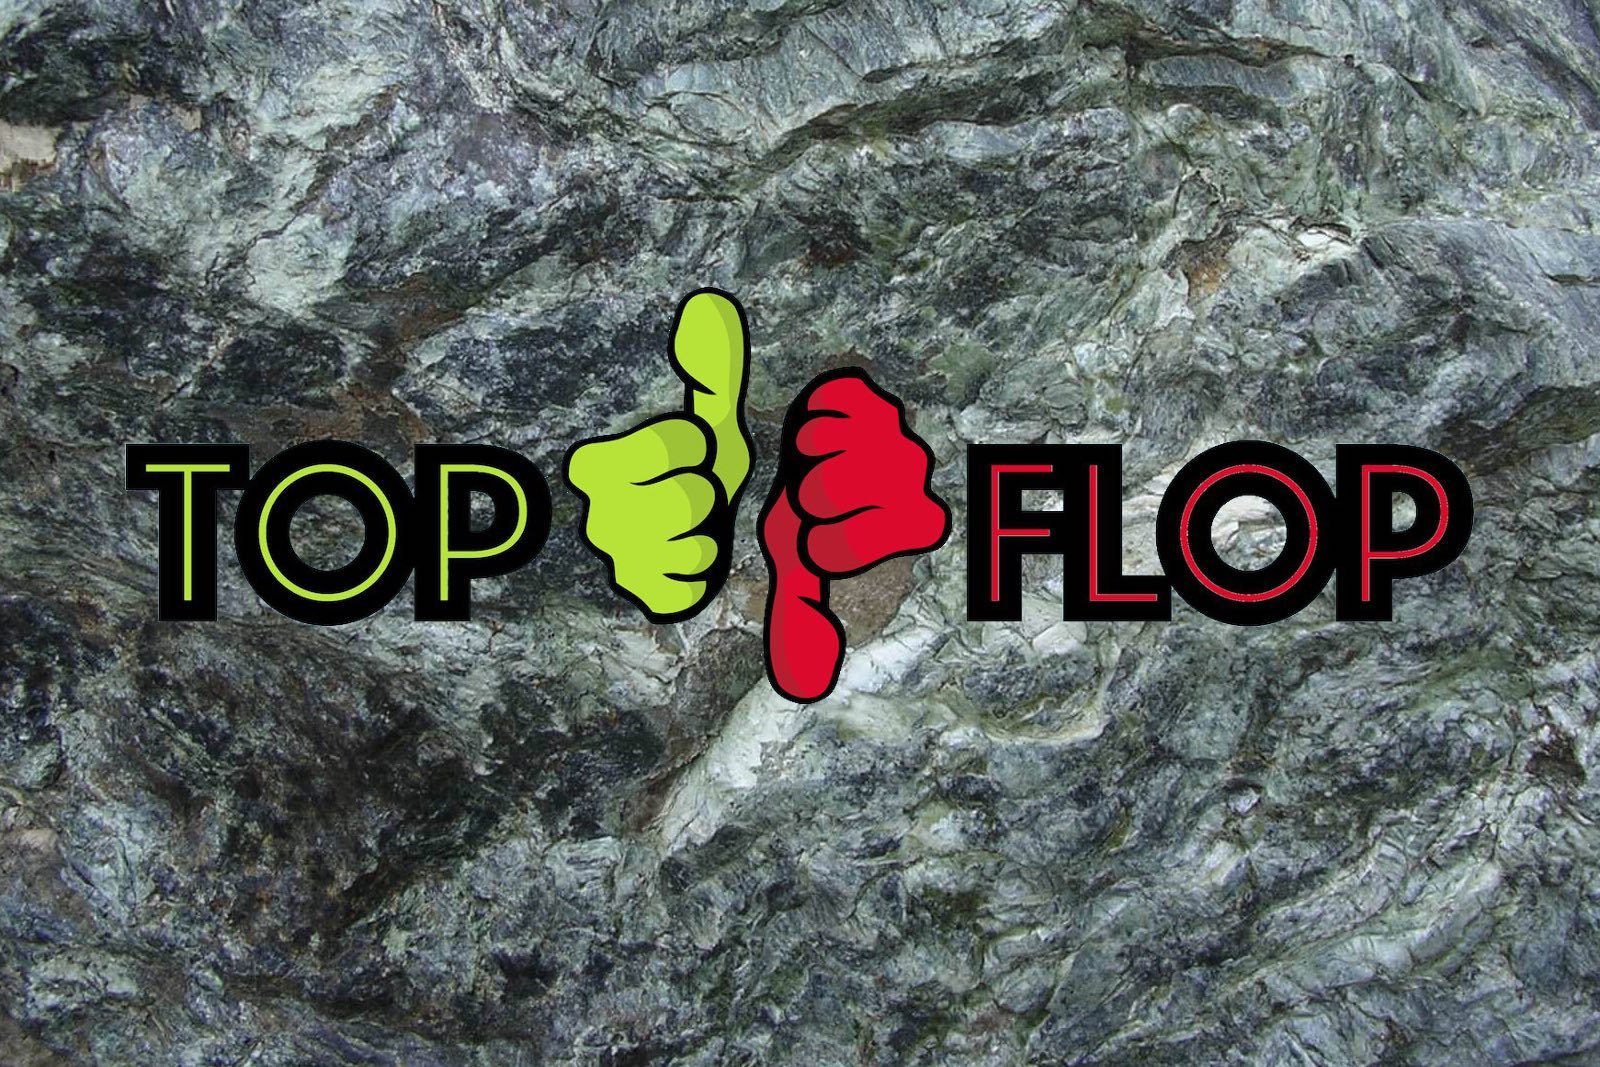 Top-Flop-rock-1600x1067.jpg